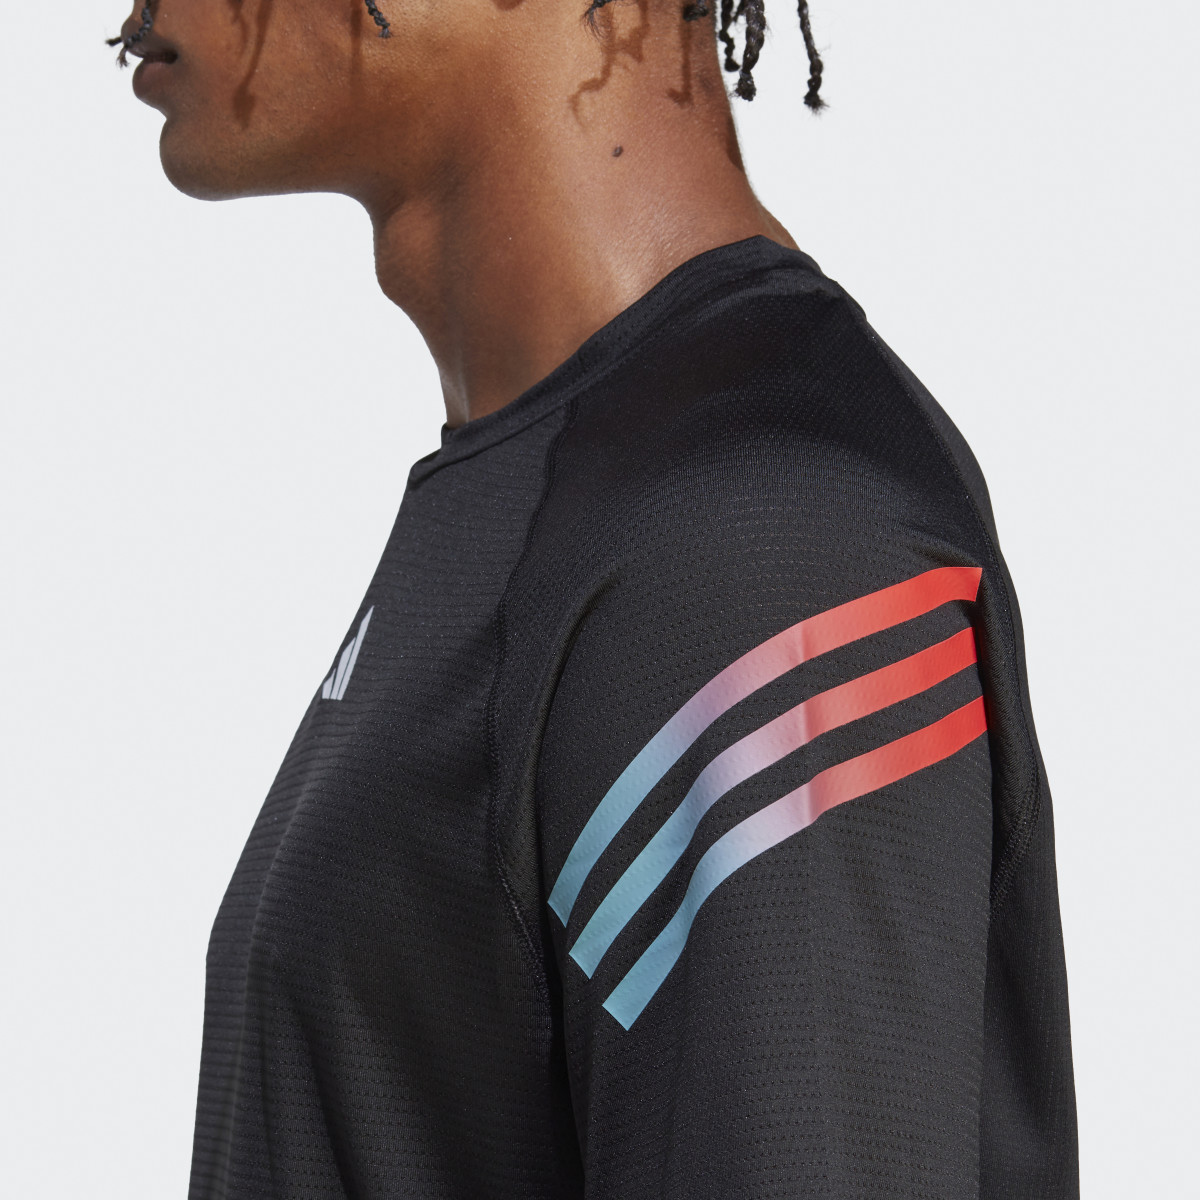 Adidas Train Icons 3-Stripes Training Tişörtü. 7